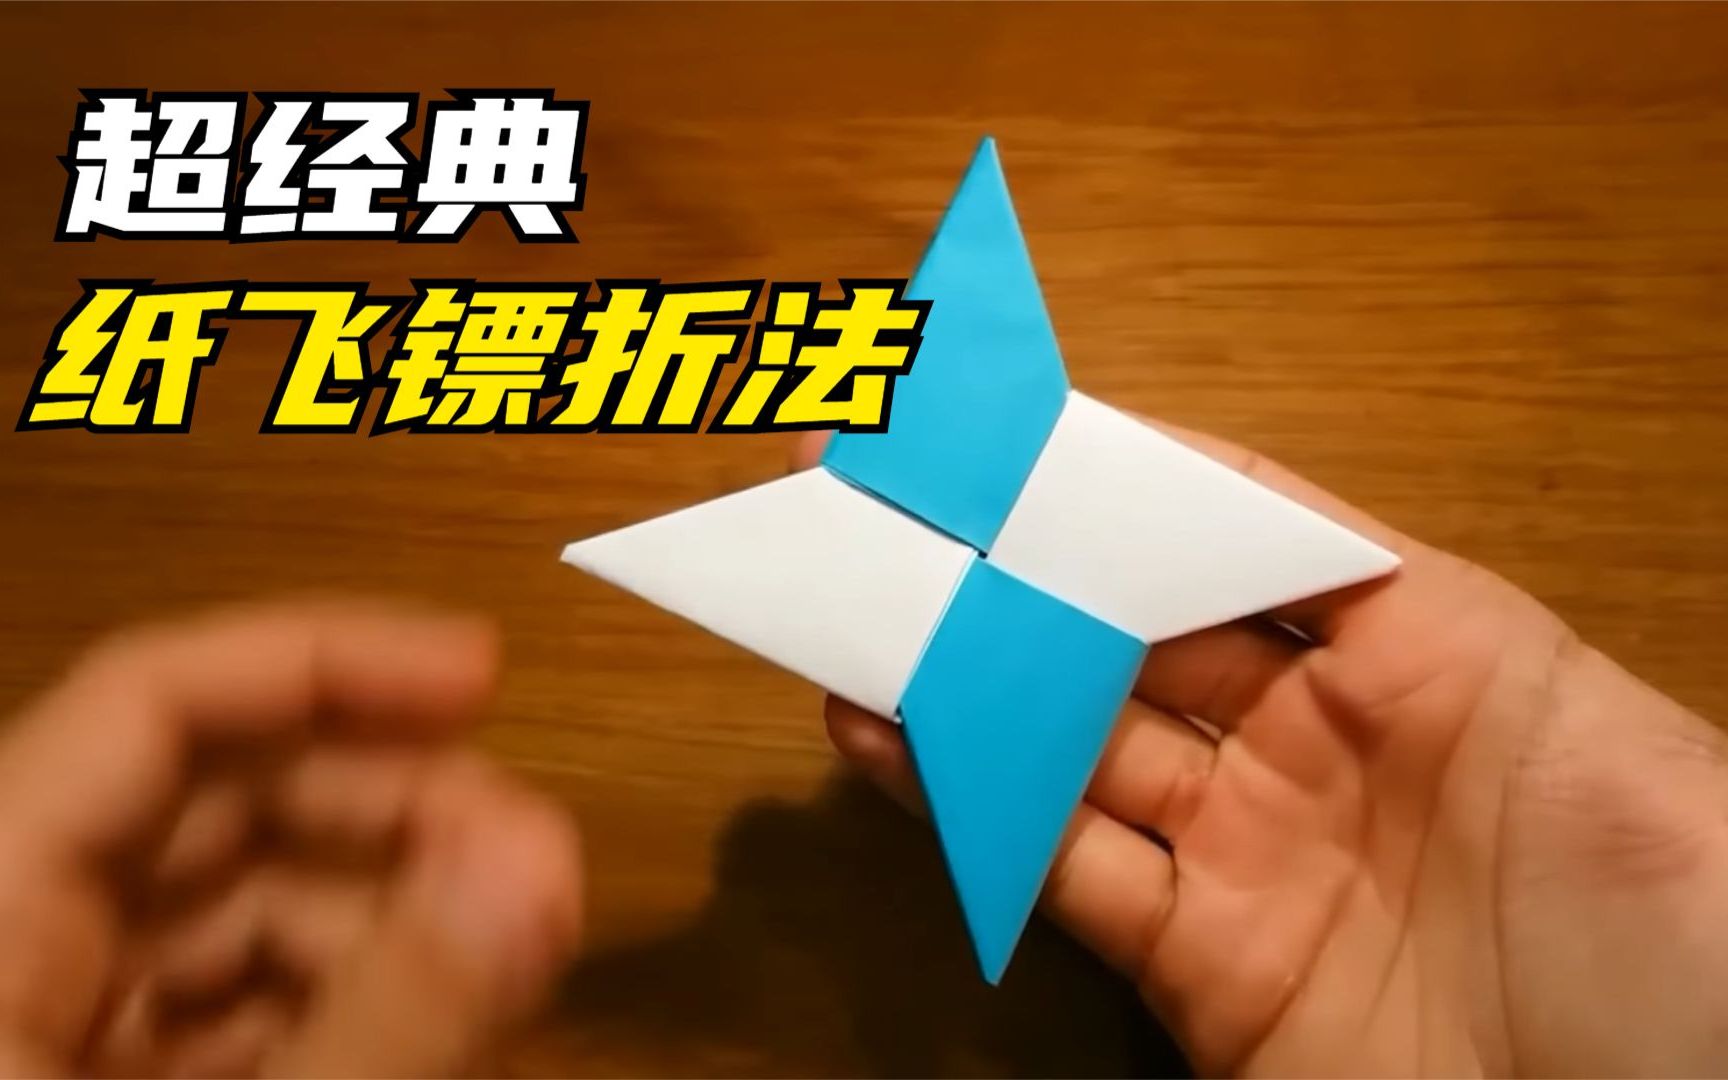 一学就会的a4纸折纸飞镖教程,折法简单,想学飞镖折纸的看过来!